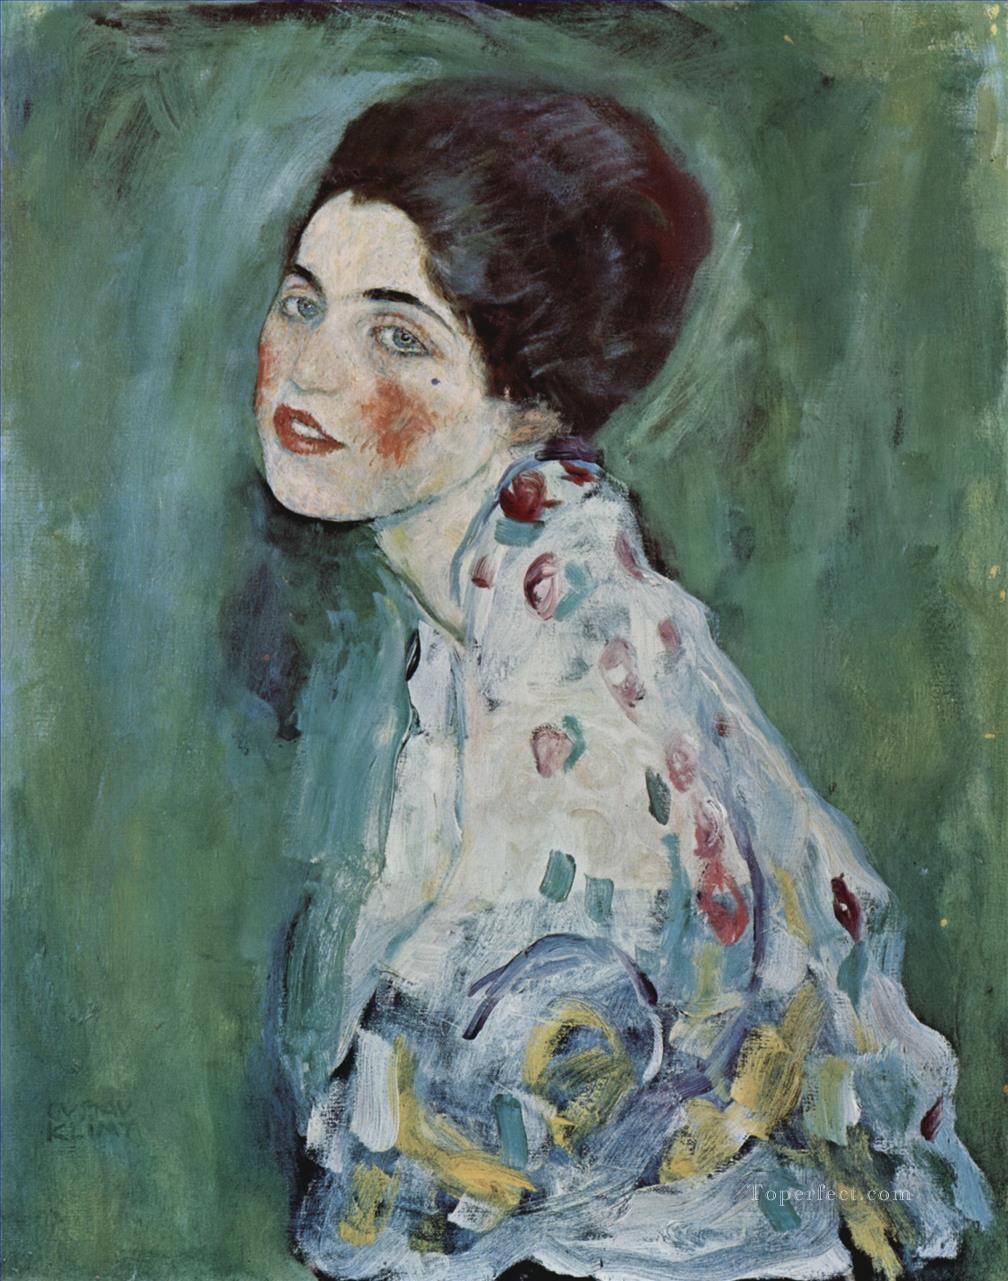 グスタフ・クリムト夫人の肖像油絵